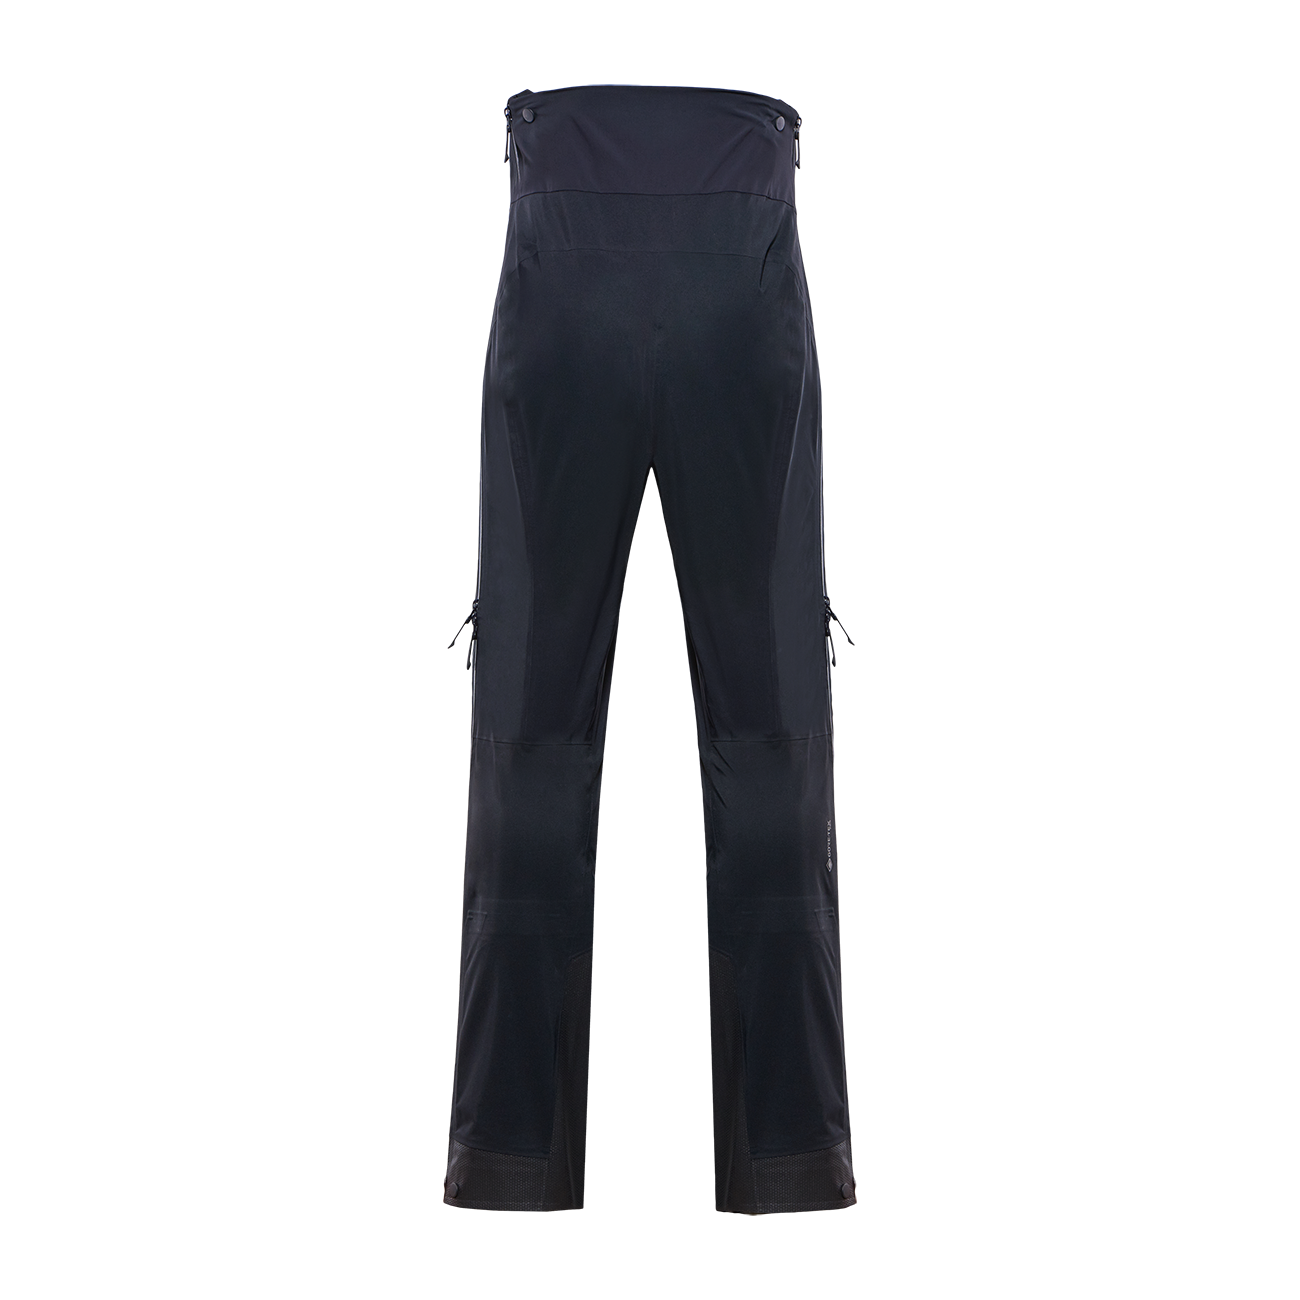 Black Yak Mens Active Insulation 2.0 Trousers (Black) | Sportpursuit.c